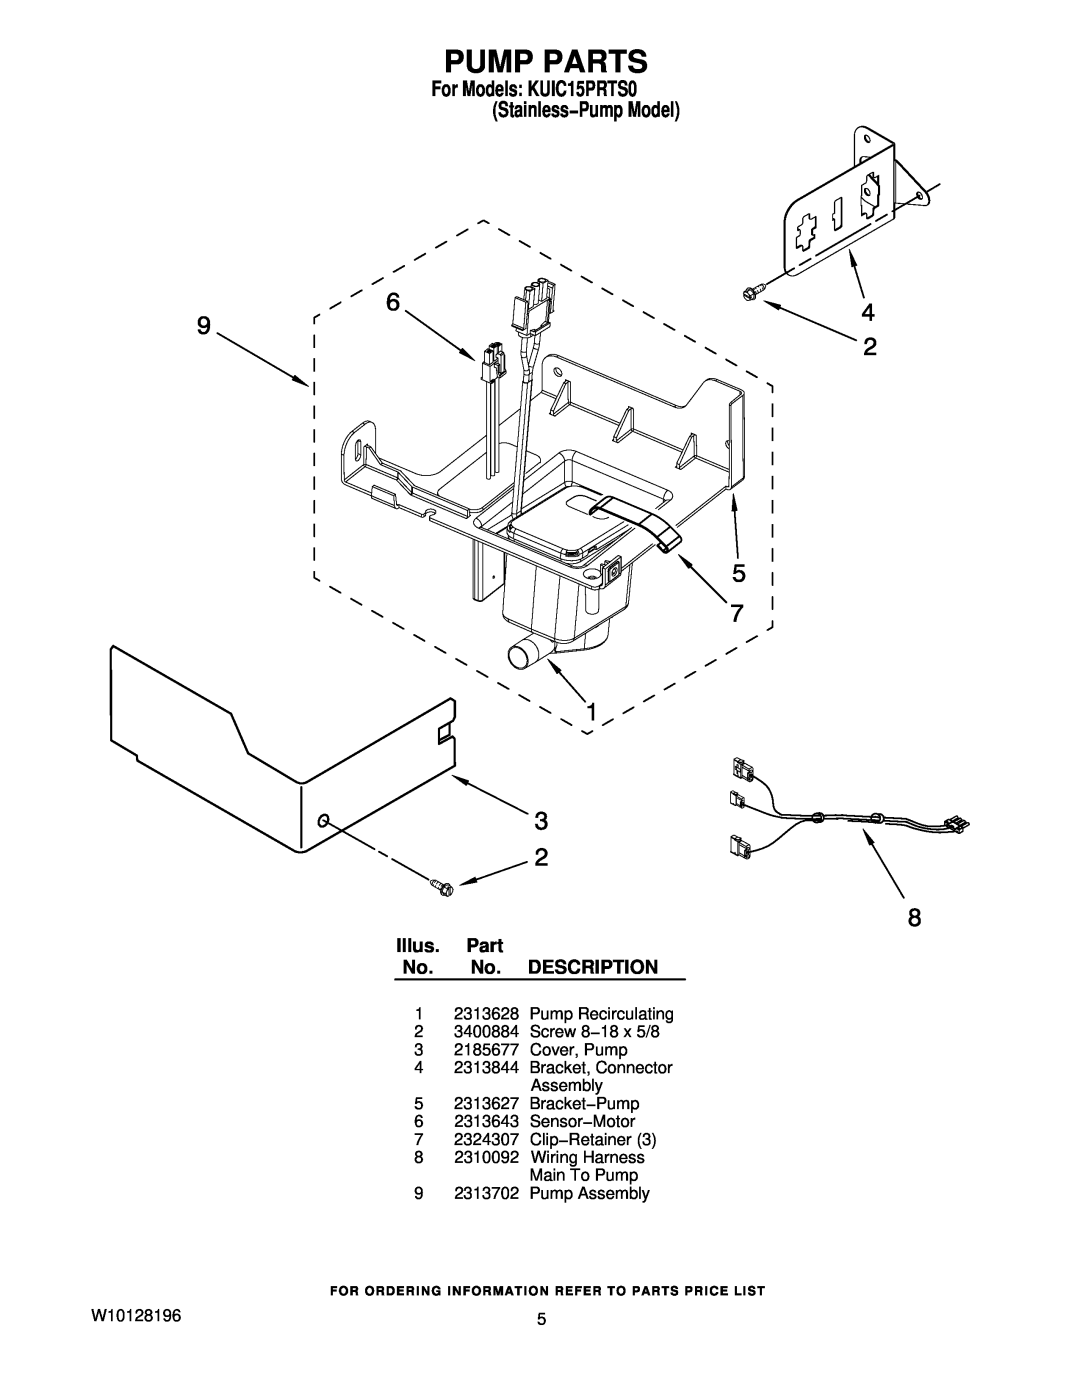 KitchenAid manual Pump Parts, Illus. Part No. No. DESCRIPTION, For Models KUIC15PRTS0 Stainless−Pump Model 